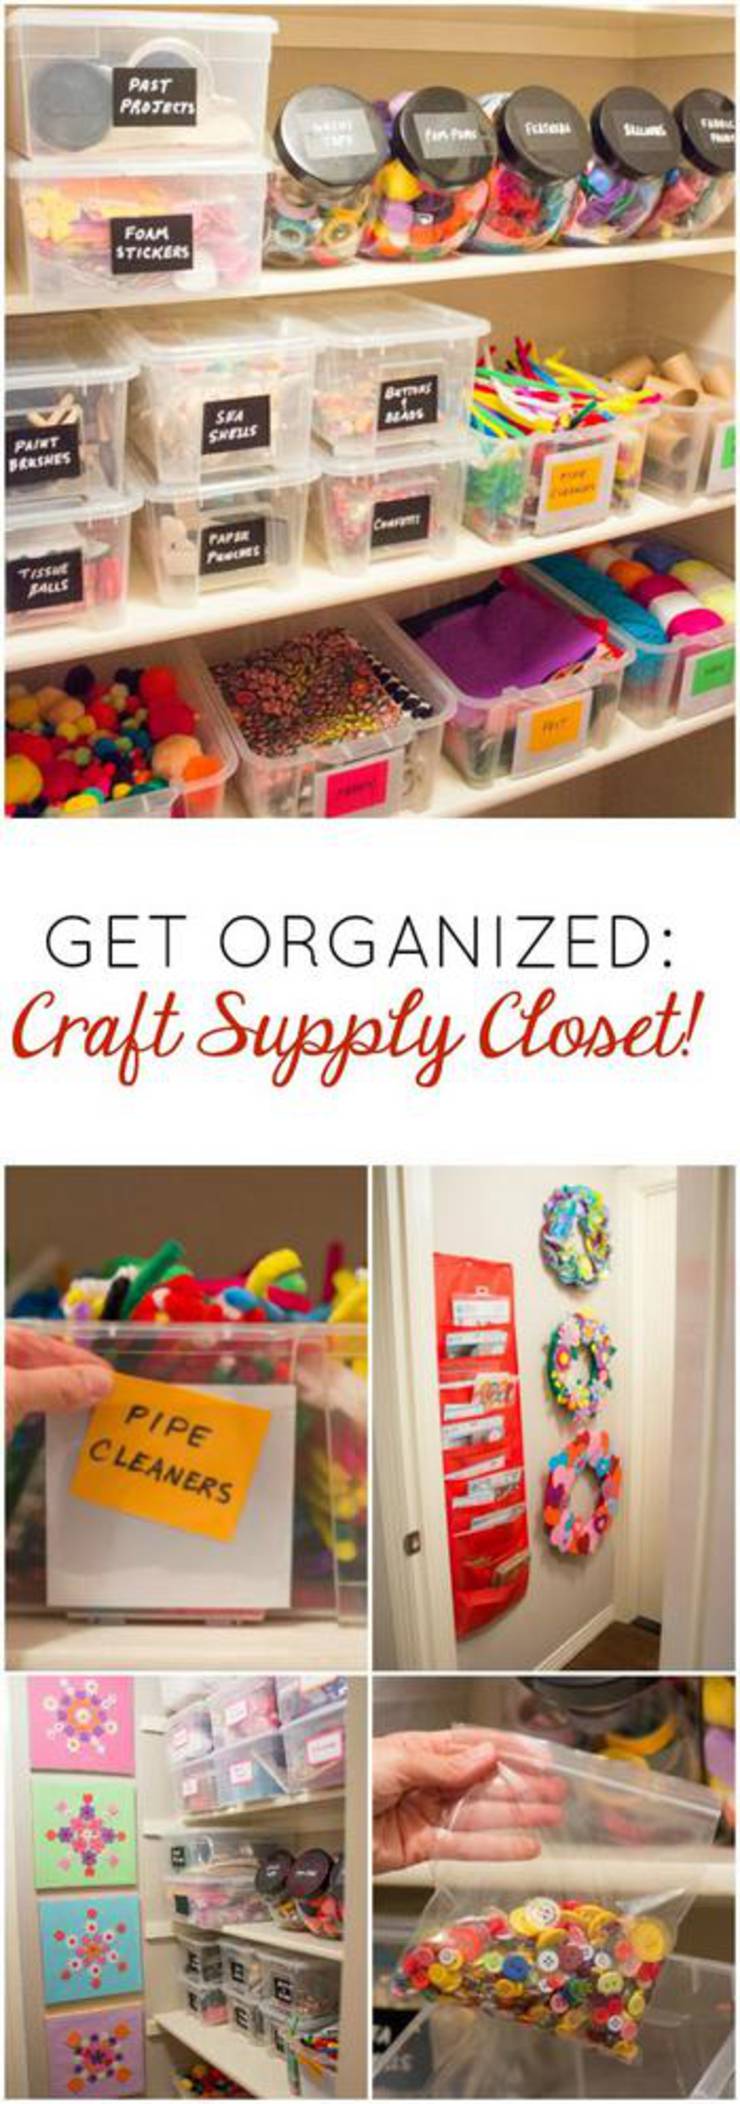 Craft Supply Closet